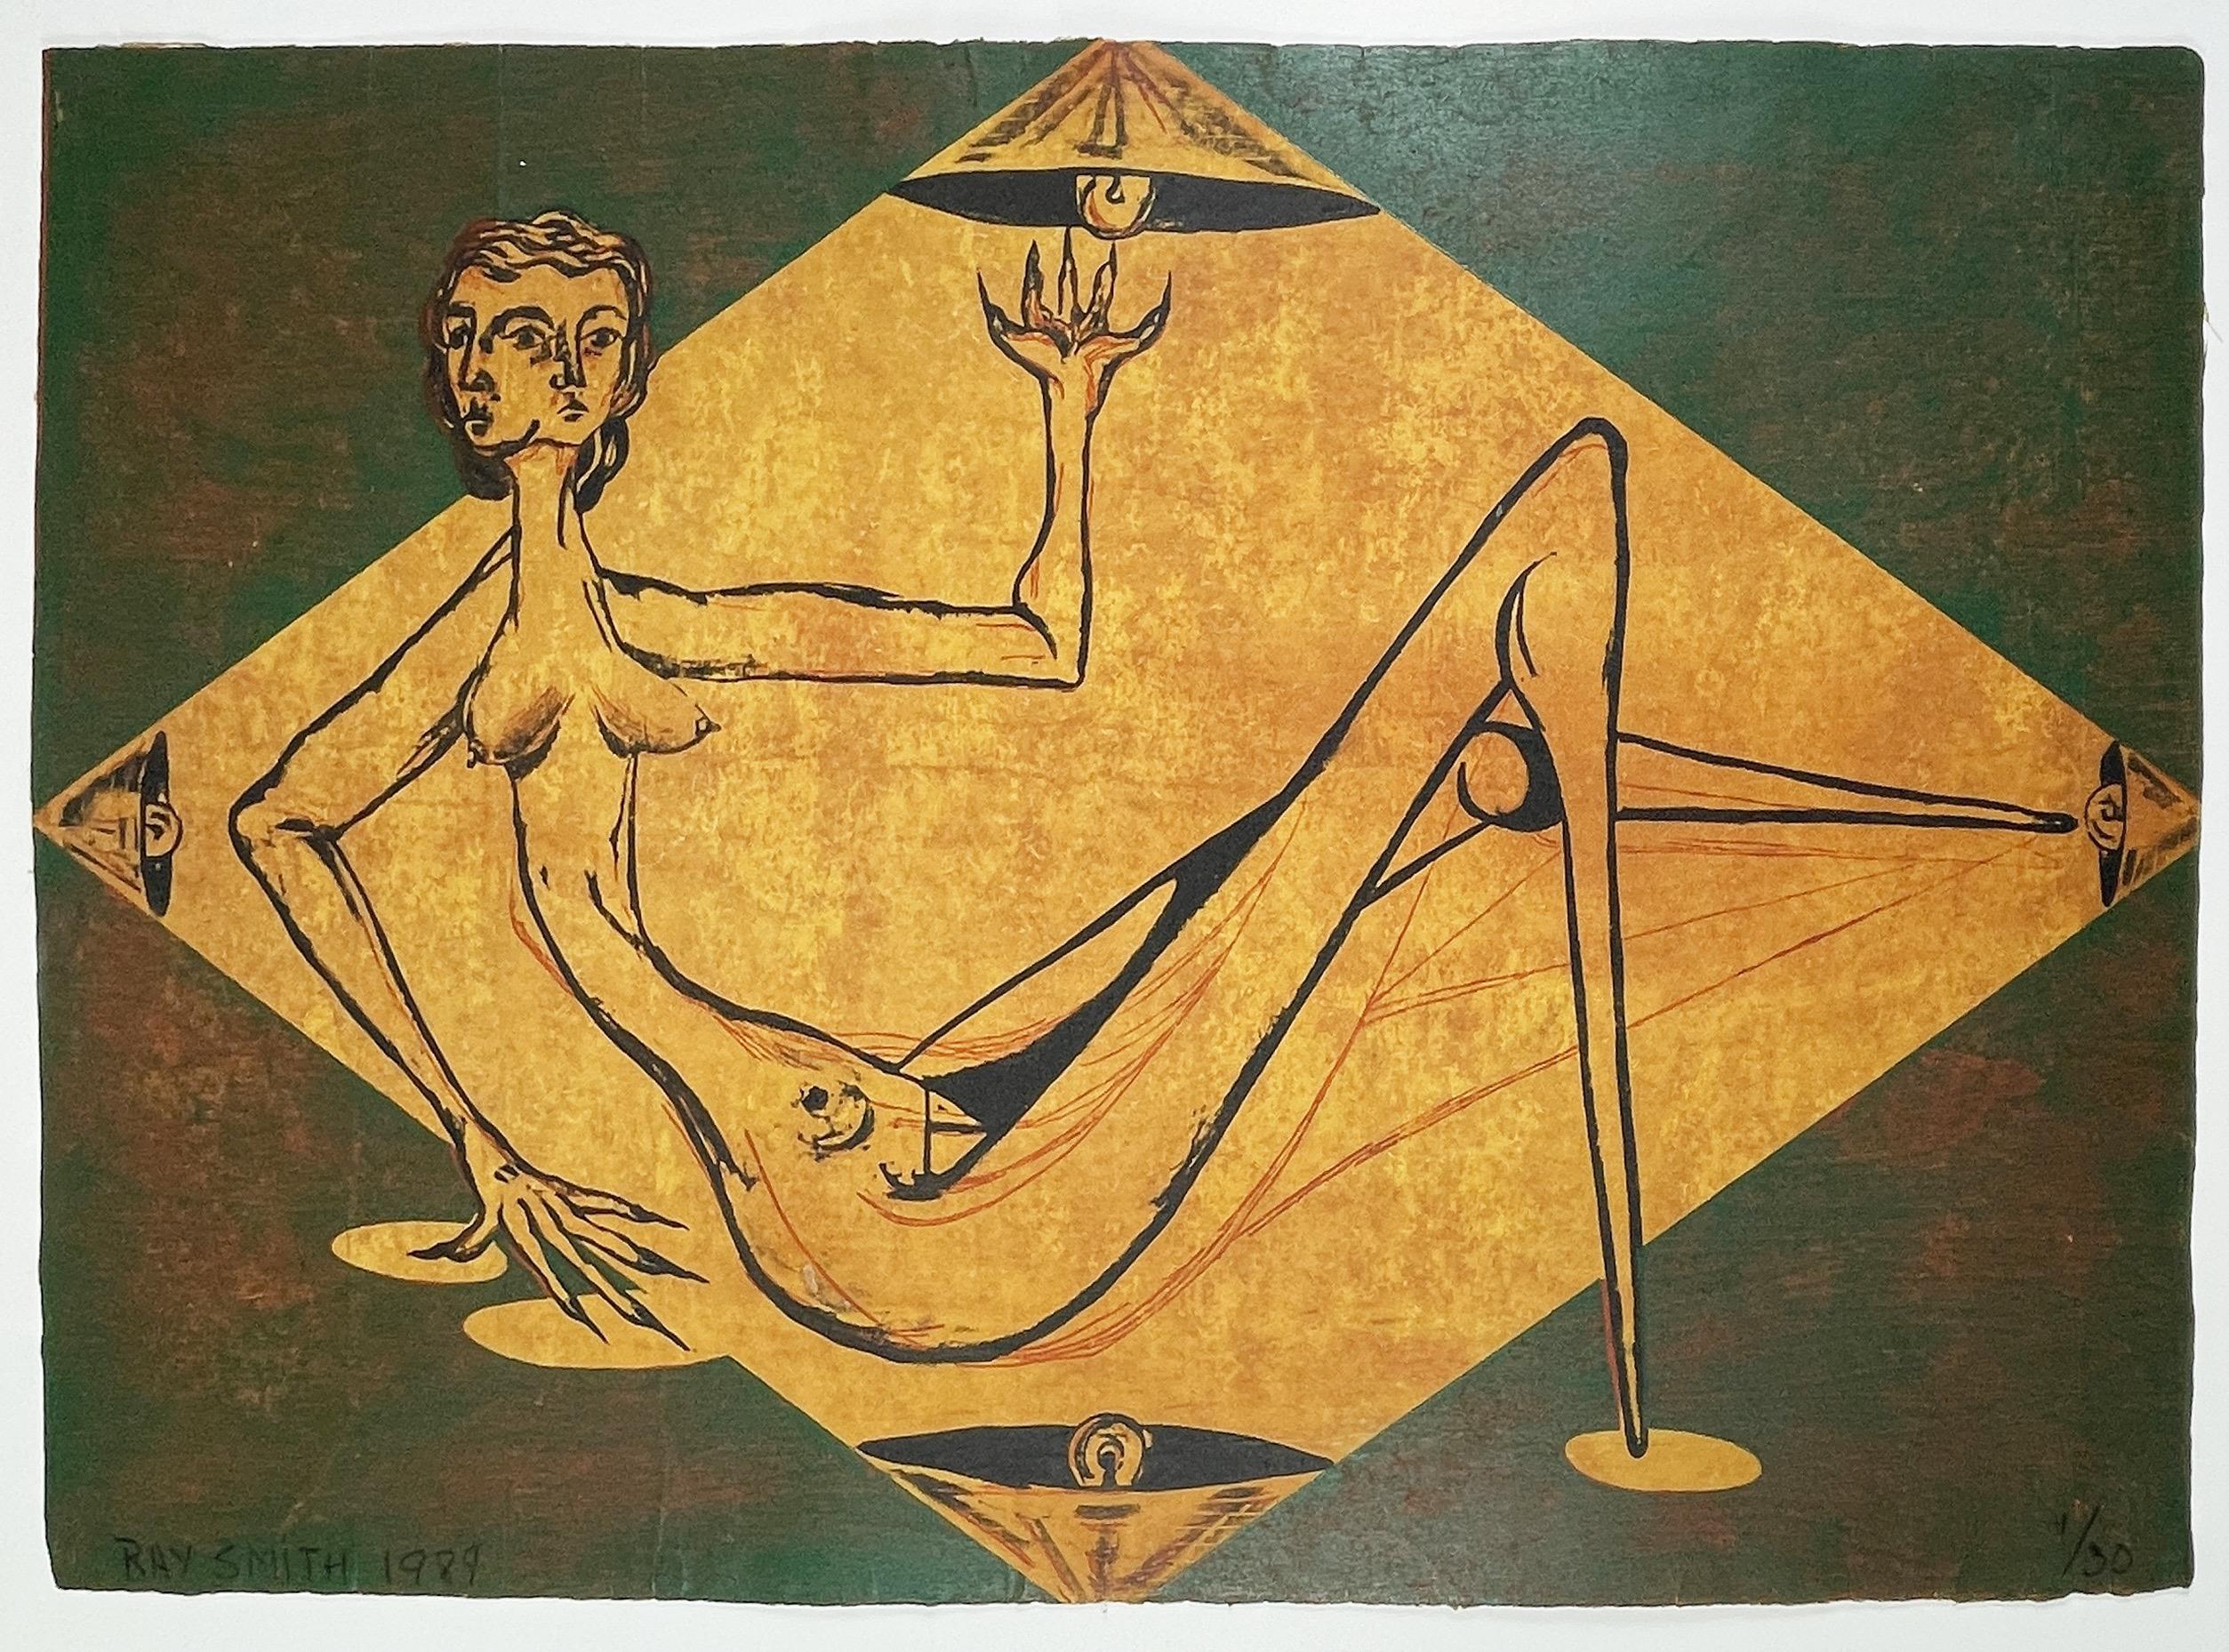 Ray Smith verdeutlicht den "Traum eines Pfadfinders" in diesem surrealen Holzschnitt in Grün, Rot und Gelb. Eine Frau mit zwei Gesichtern sitzt nackt in einem rautenförmigen, goldenen Farbfeld. Sie streckt ihre Hand nach oben und ihr Bein nach